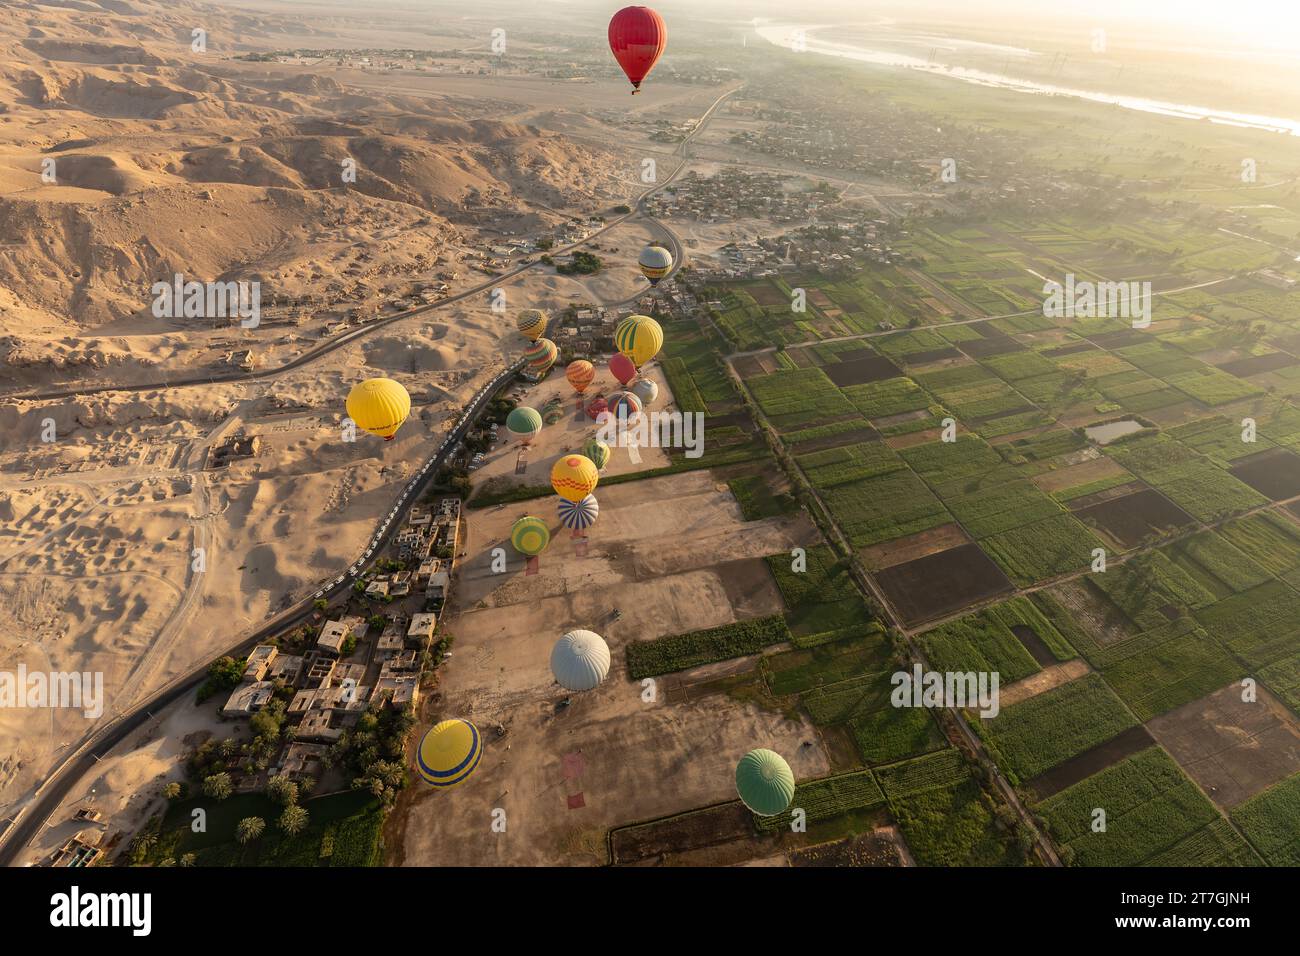 Vue aérienne d'un groupe de montgolfières survolant la frontière entre les sables désertiques clairsemés et les champs agricoles fertiles de la vallée du Nil Banque D'Images